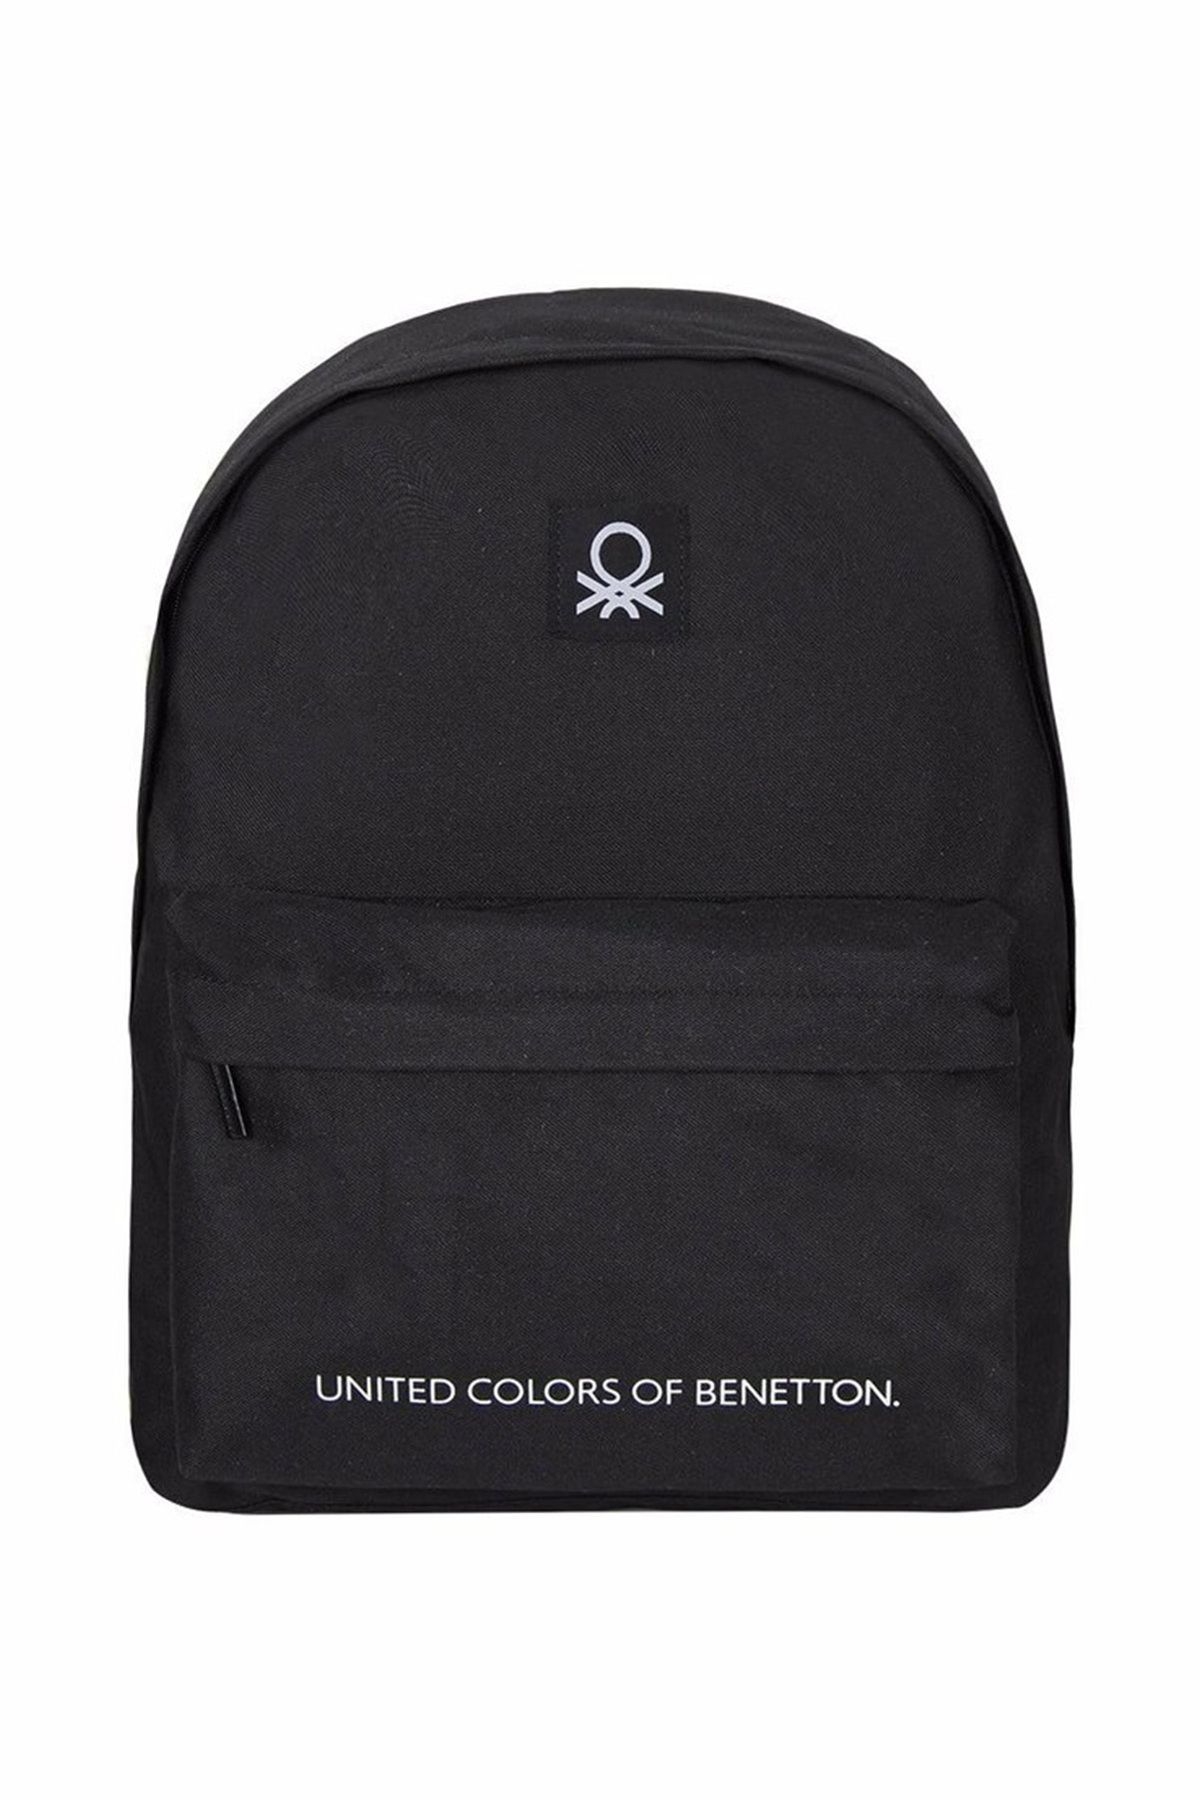 United Colors of Benetton . Ön Bölmeli Basic Sırt Çantası